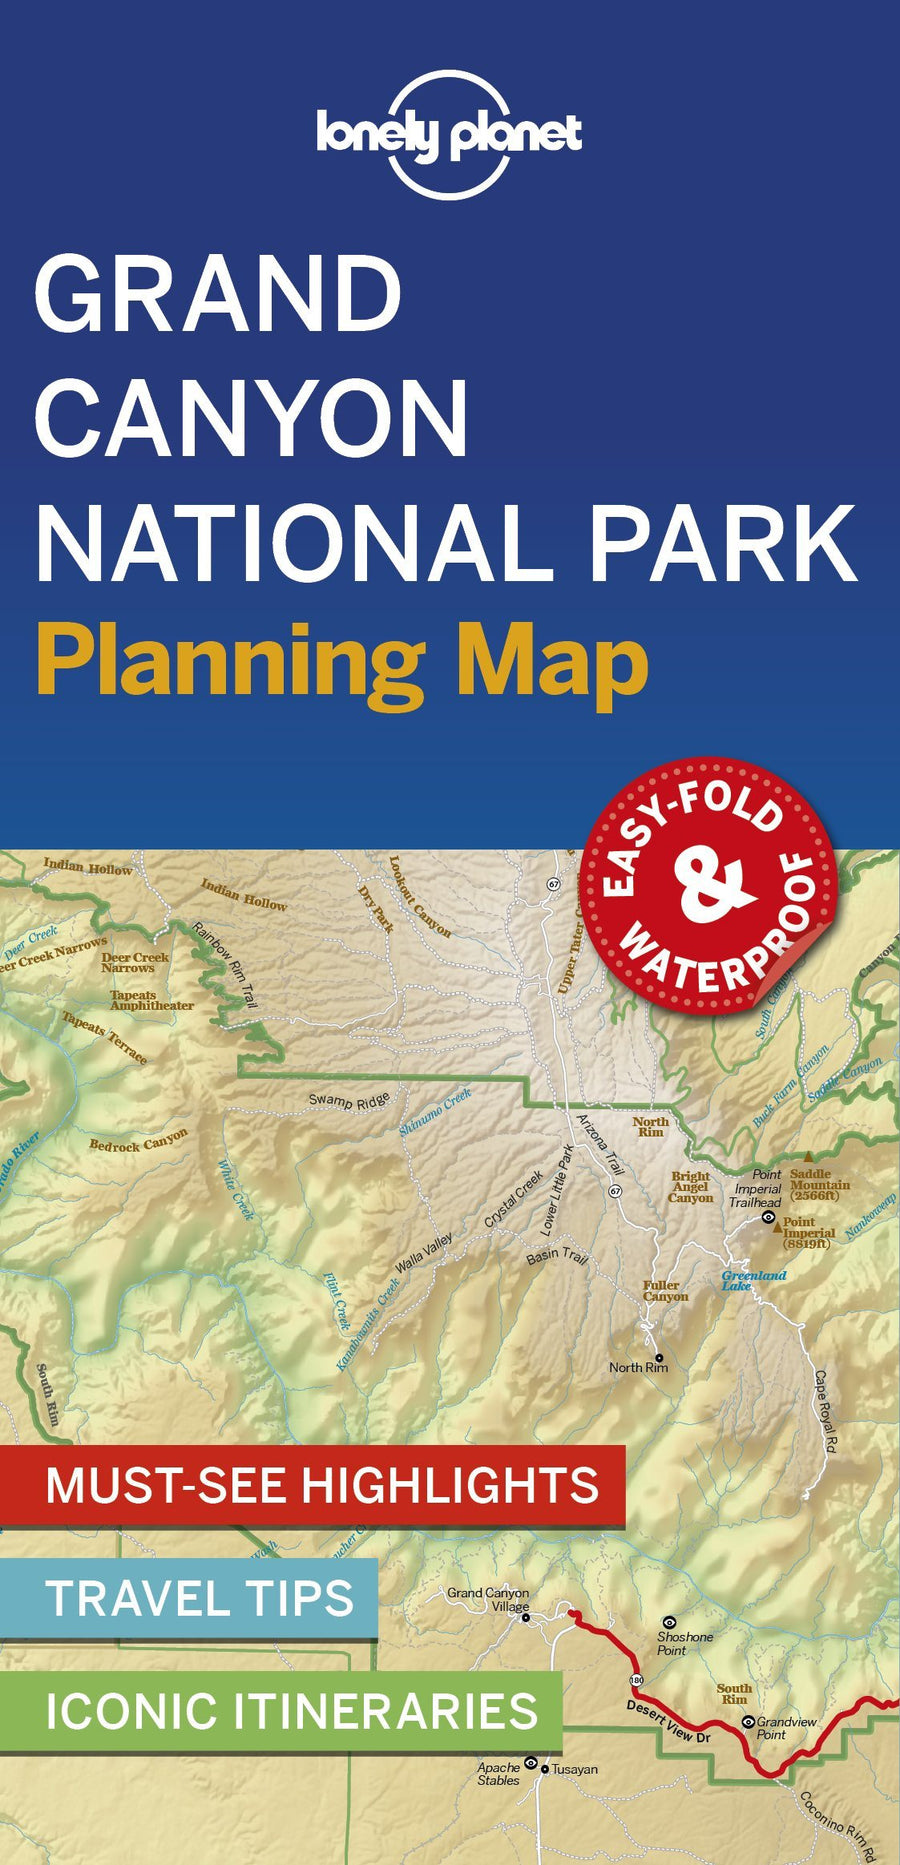 Carte de voyage (en anglais) - Grand Canyon national park | Lonely Planet carte pliée Lonely Planet 